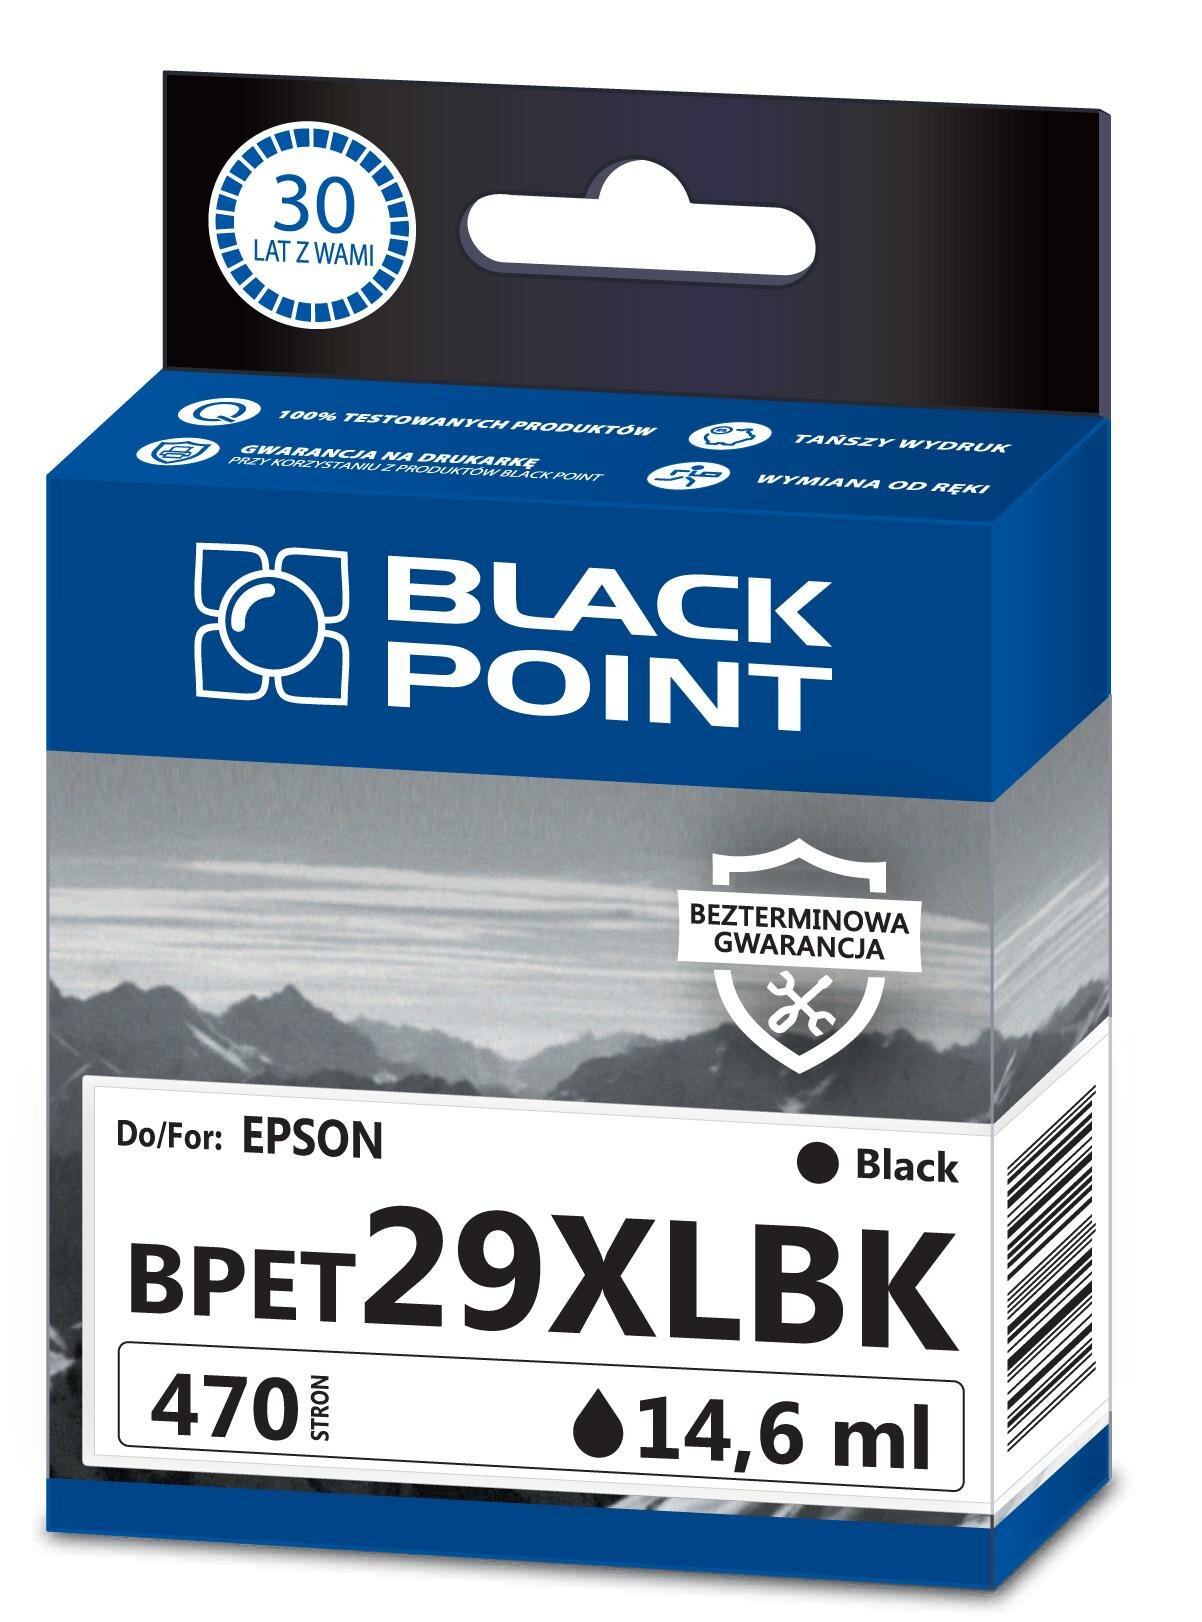 Kartridż atramentowy Black Point BPET29XLBK czarny frontem 